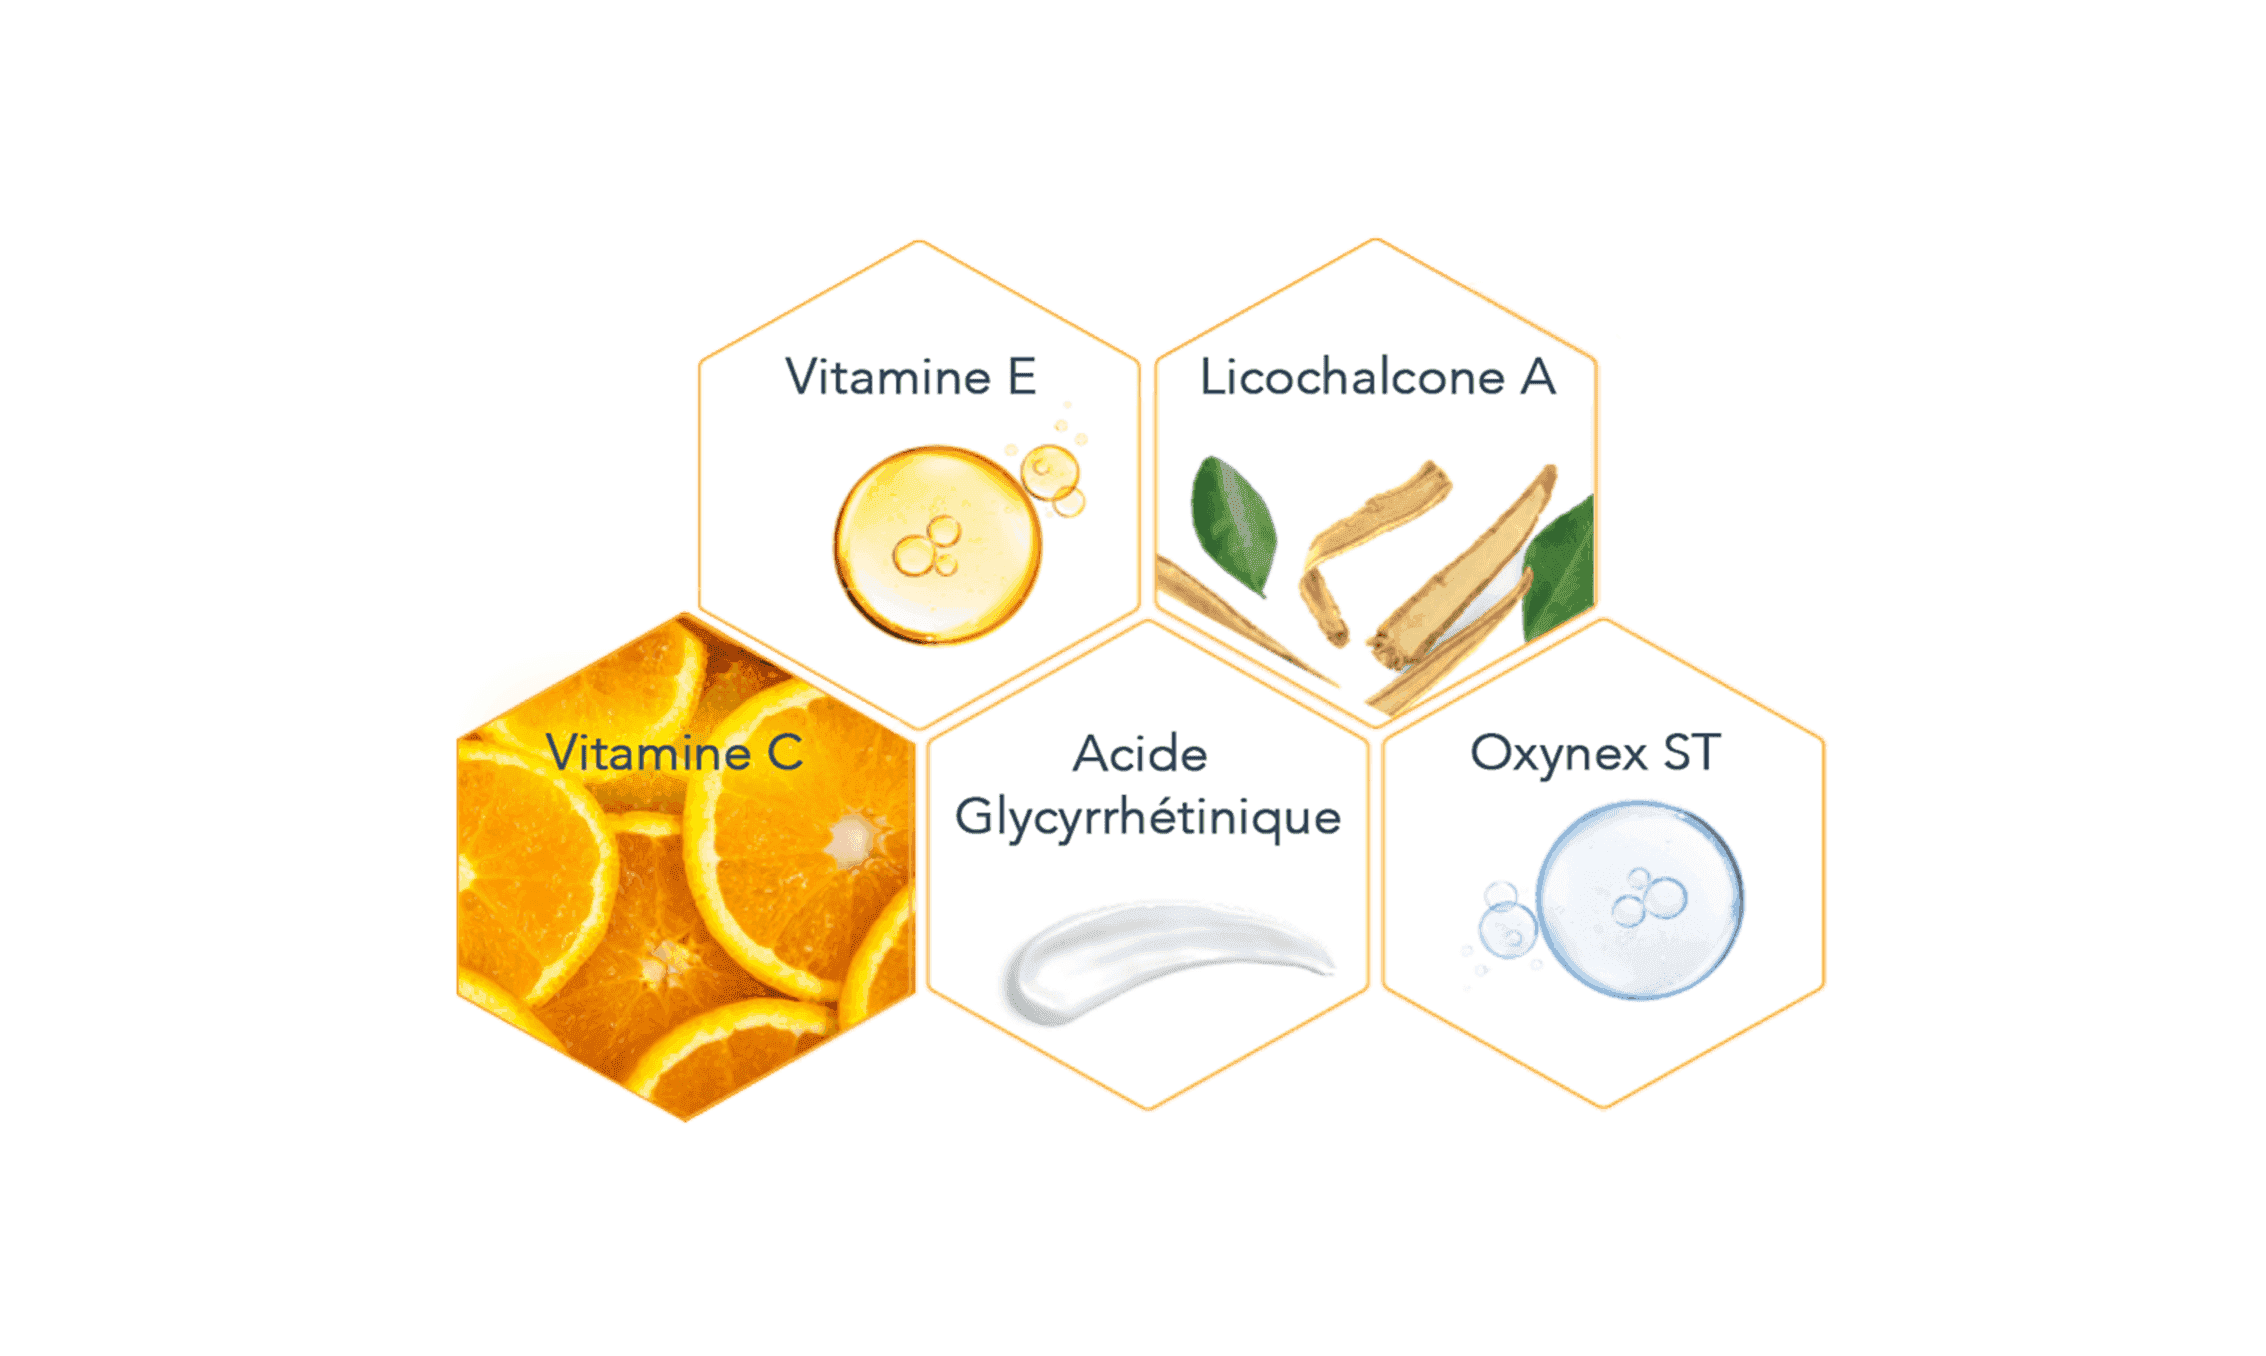 Cinq icônes hexagonaux, avec une mention à l'intérieur de chacun d'eux, dont "Vitamine E" et "Vitamine C".